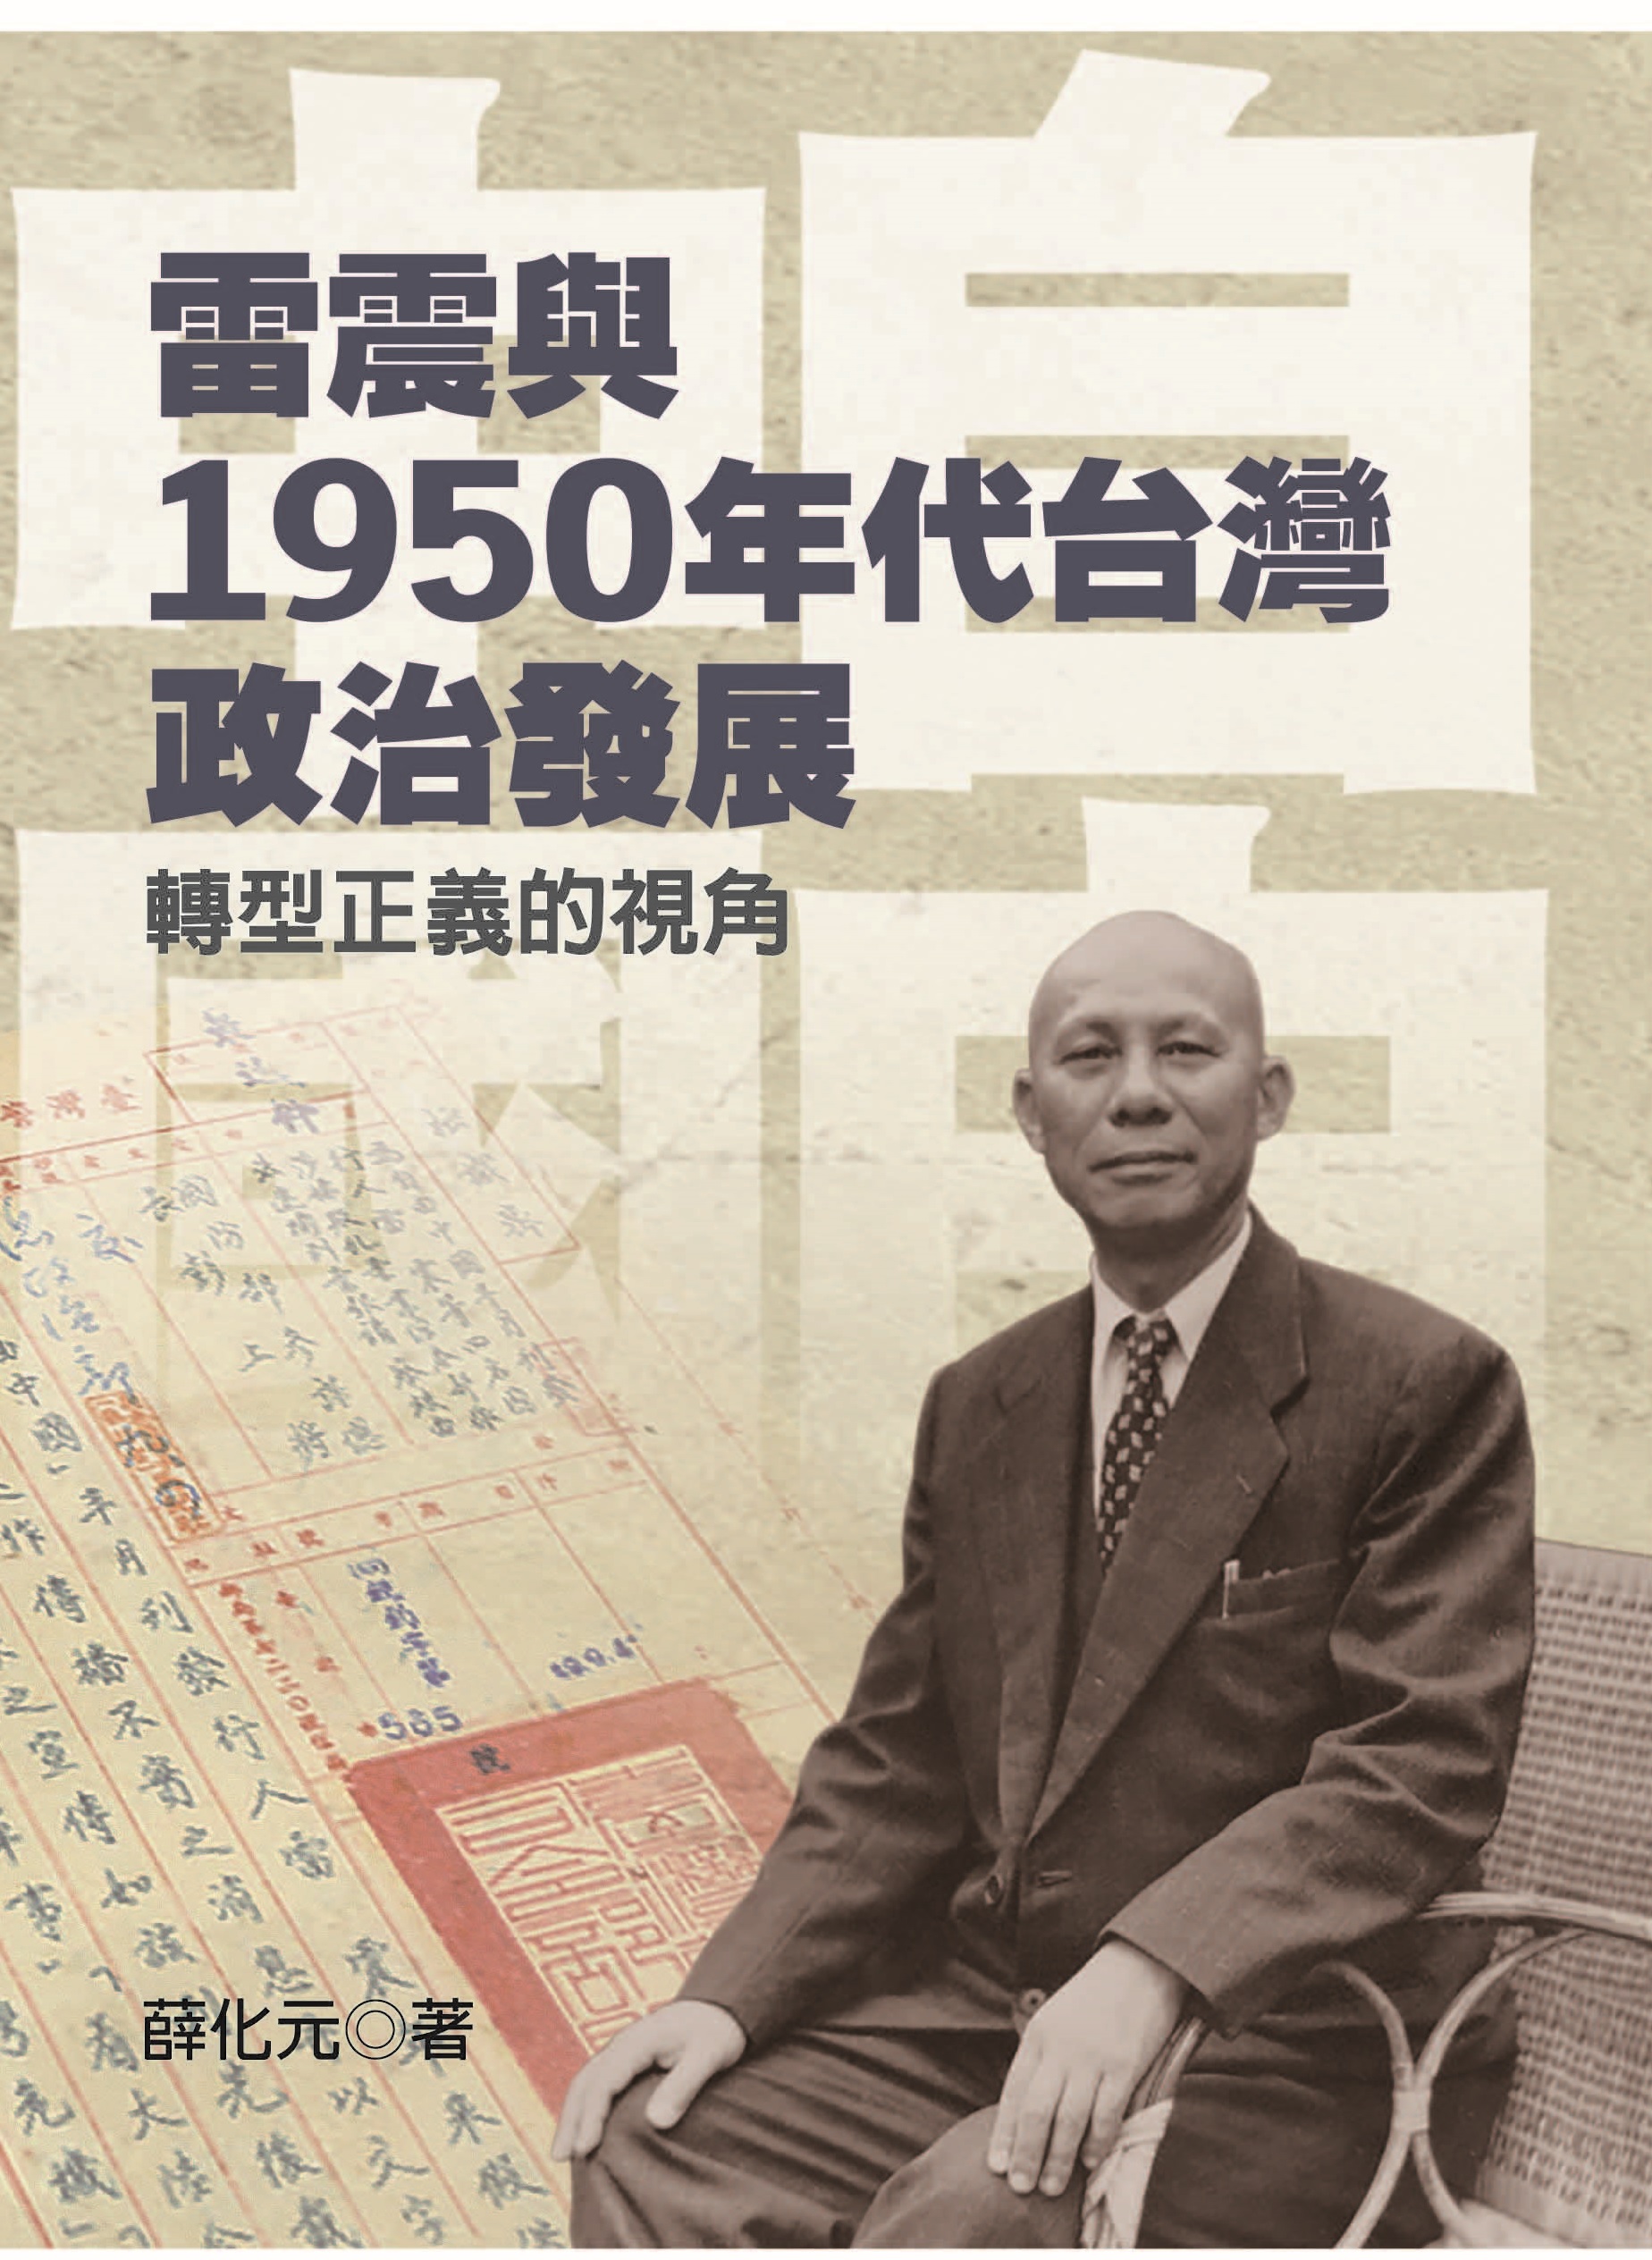 雷震與1950年代台灣政治發展——轉型正義的視角